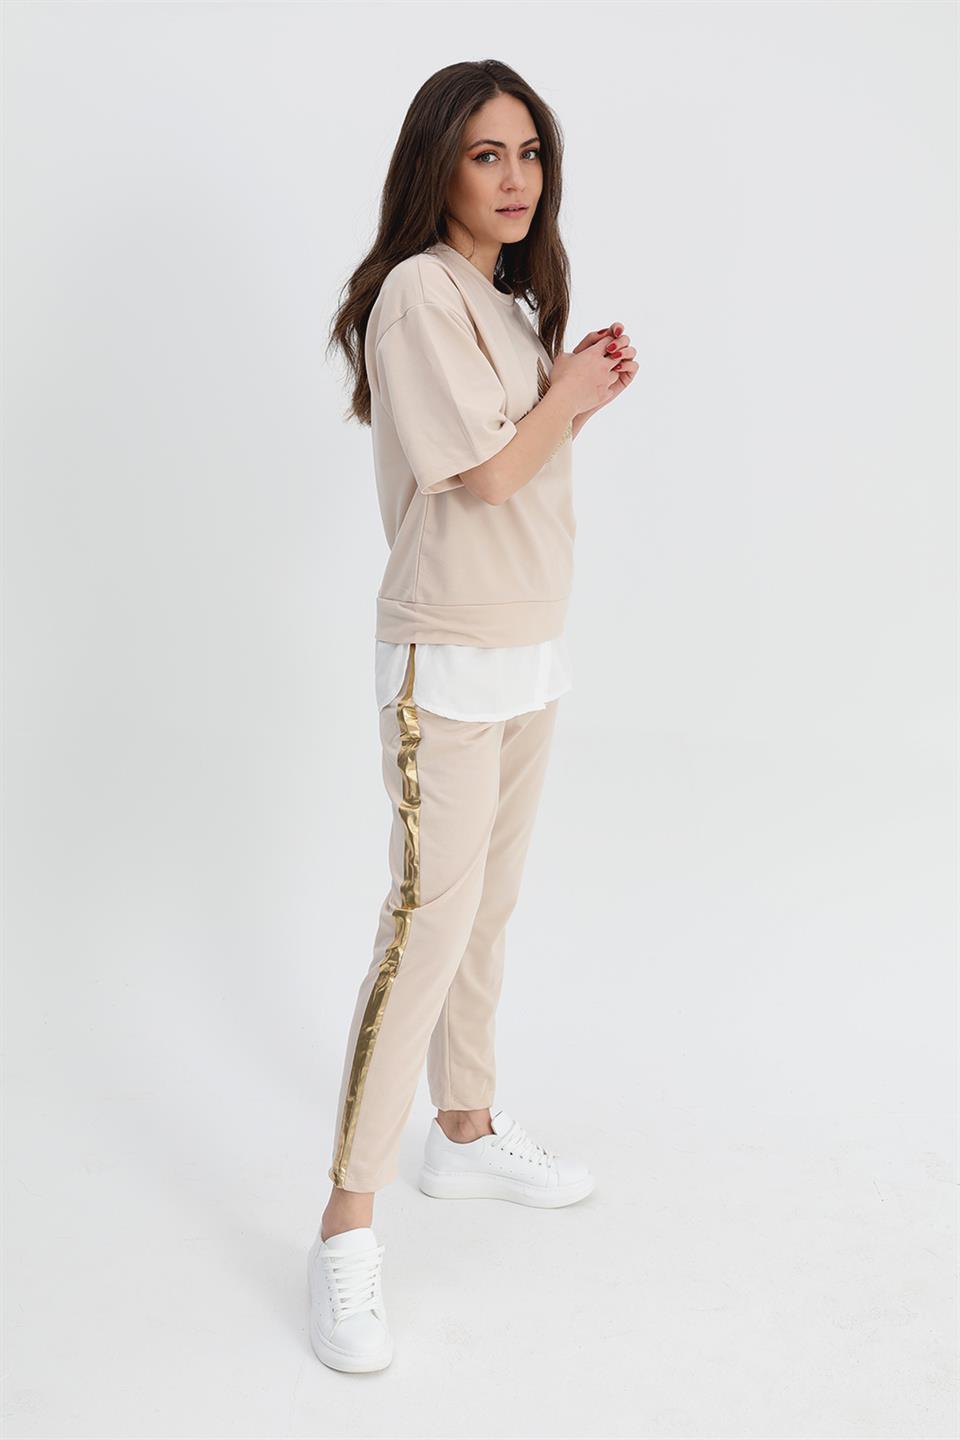 Women's Suit Skirt Grass Bird Printed Elastic Waist T-shirt Trousers - Beige - STREETMODE™